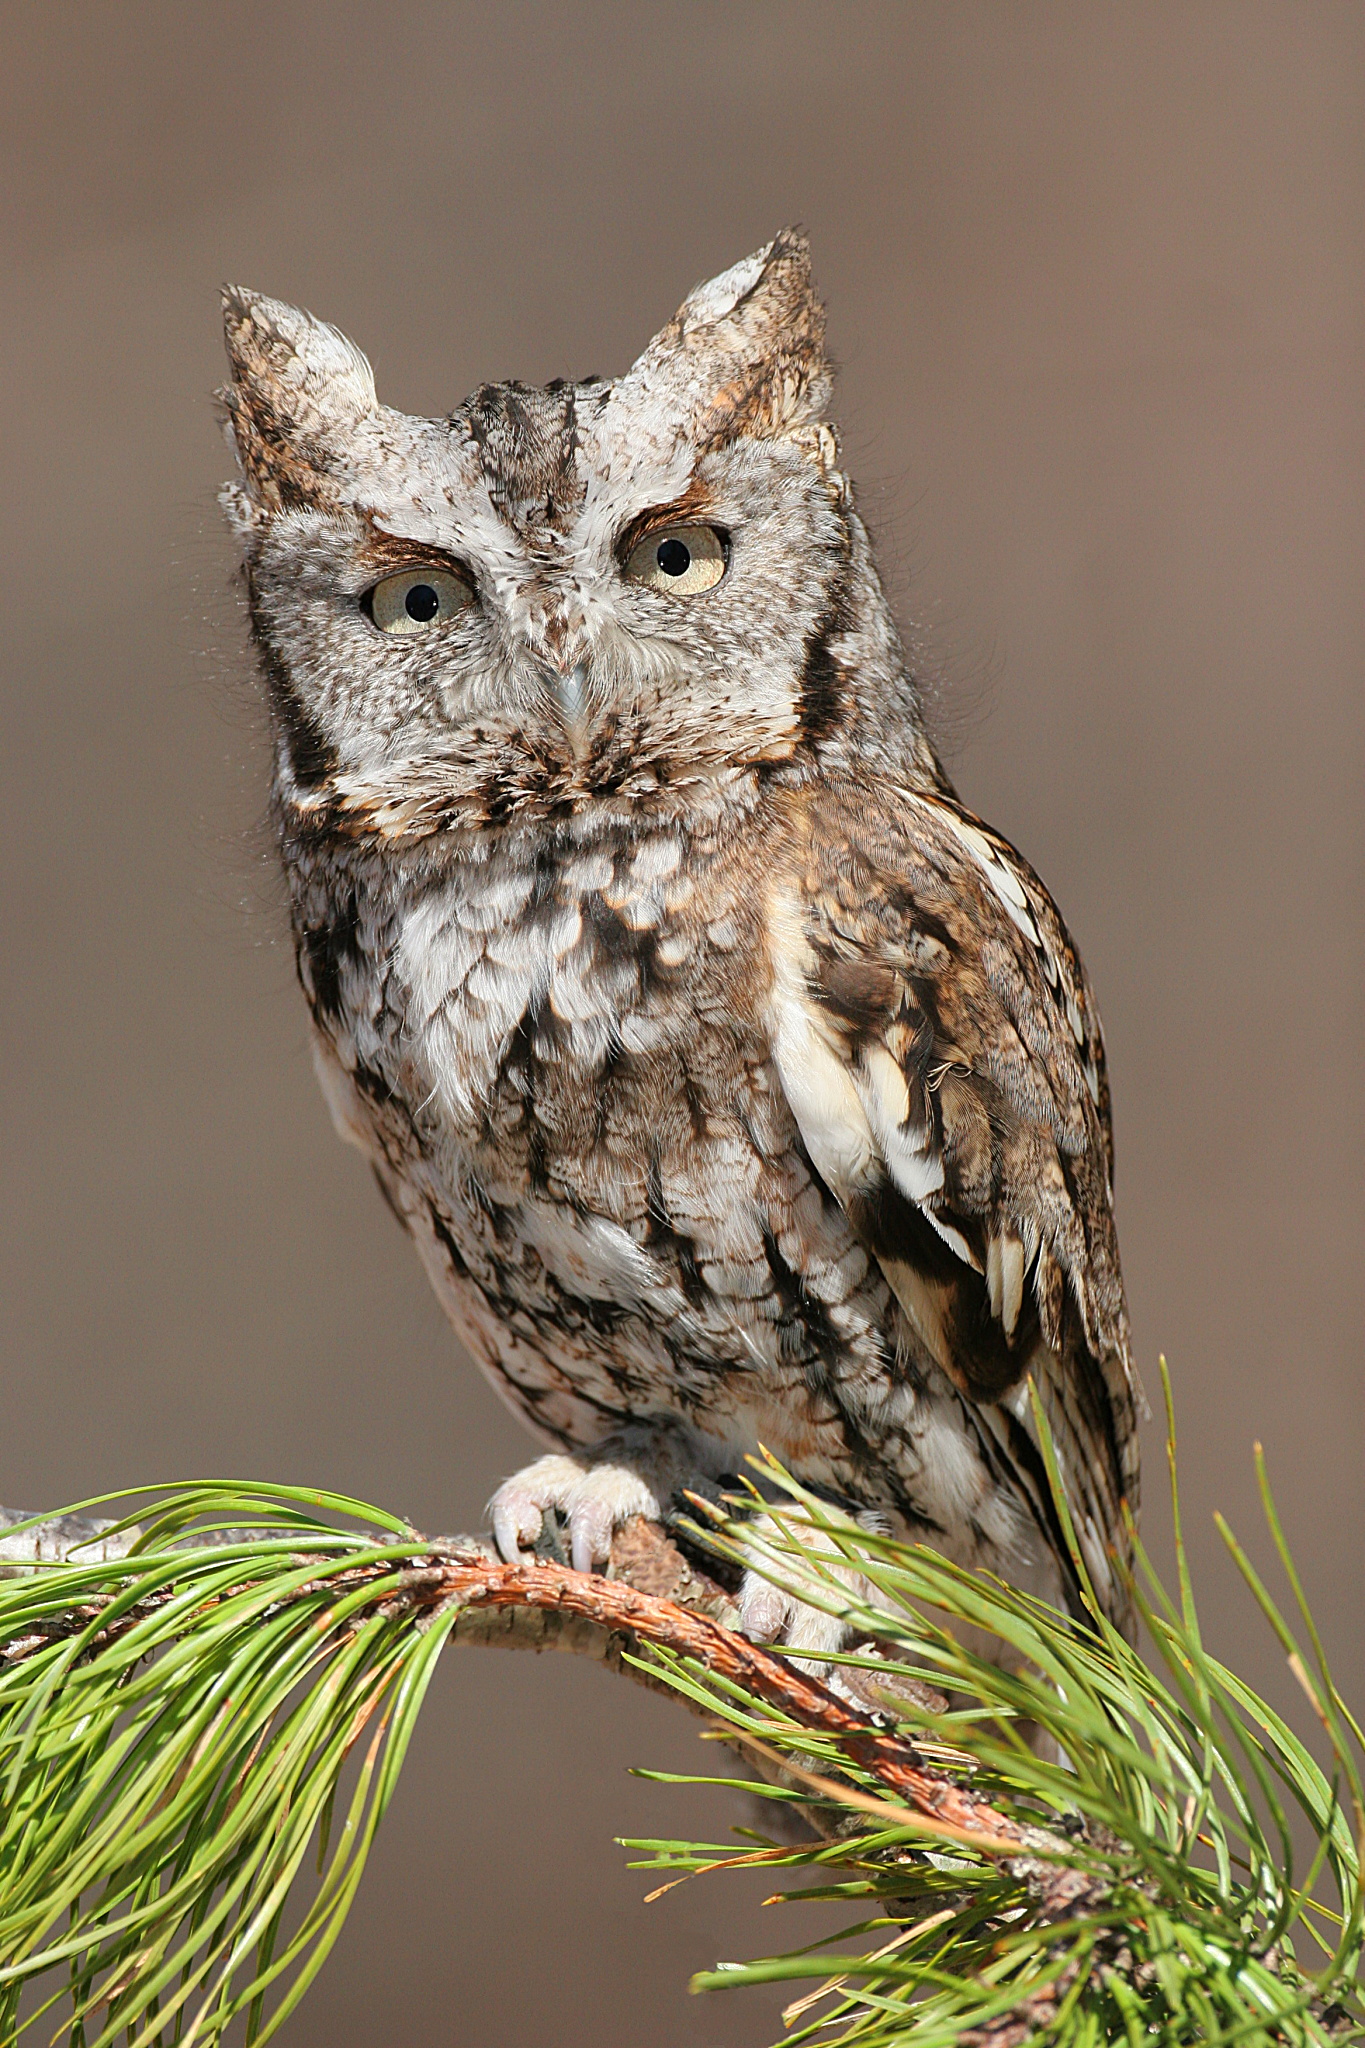 True owl - Wikipedia